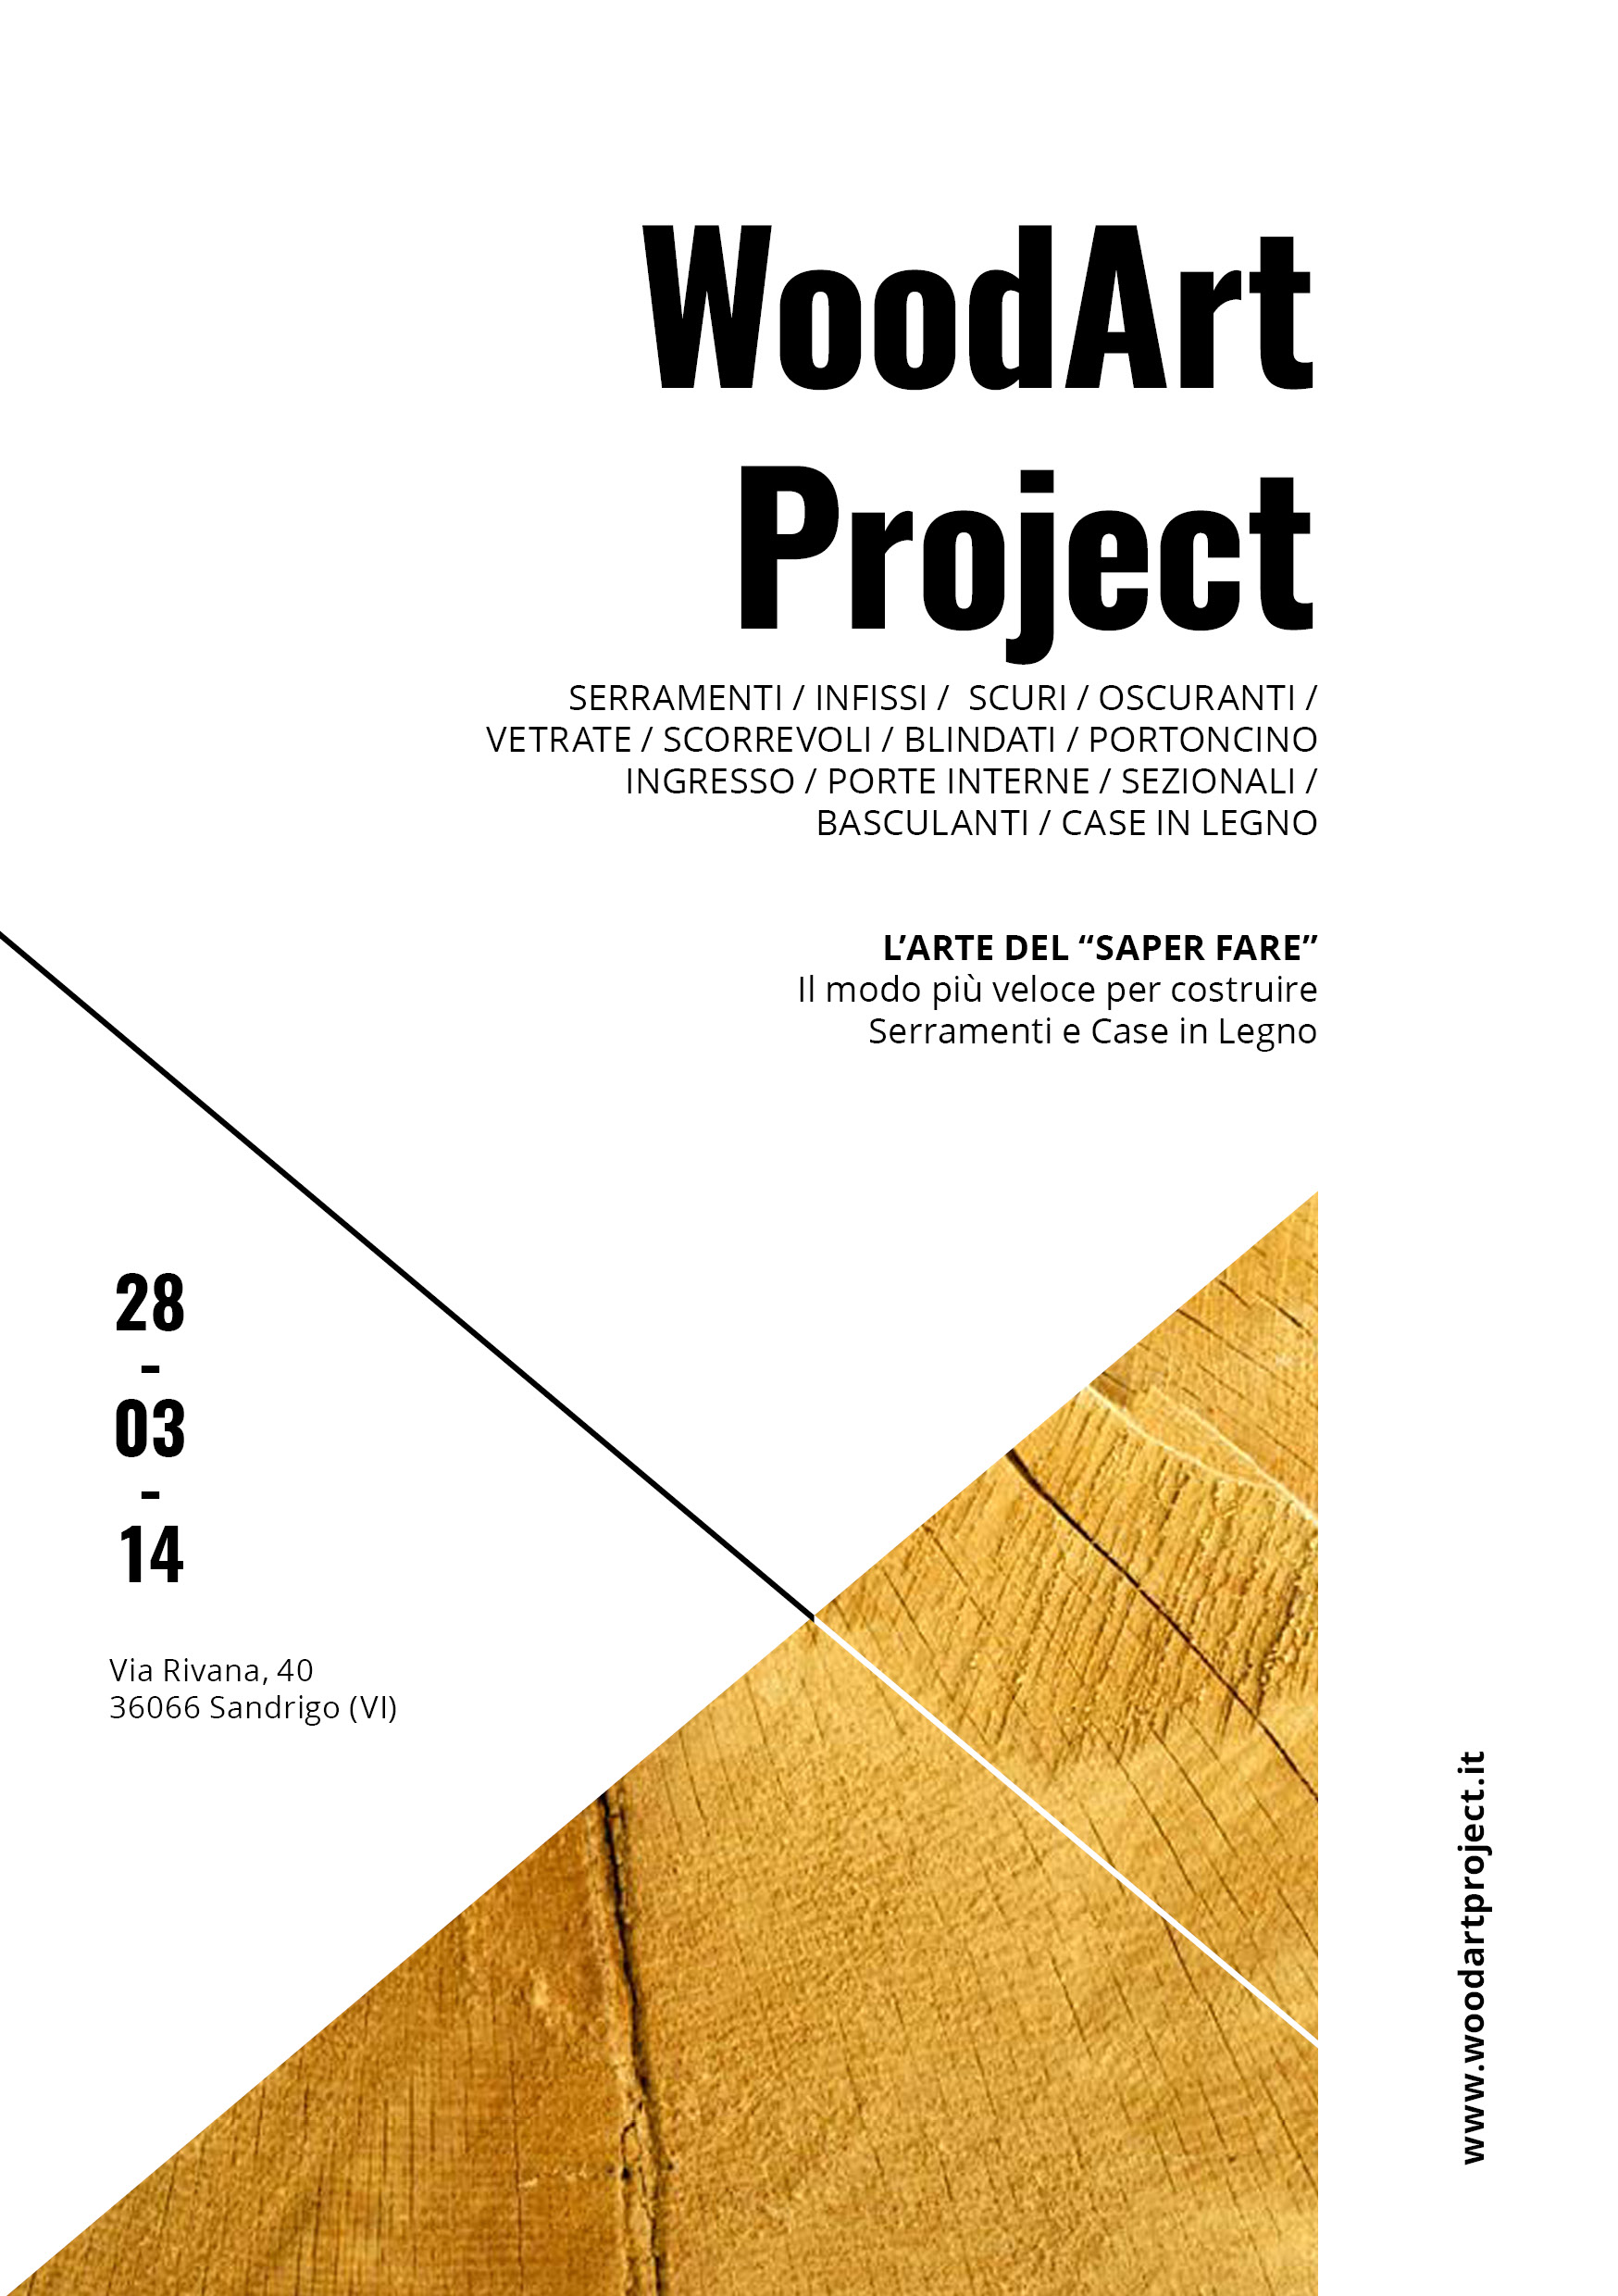 WoodArt Project